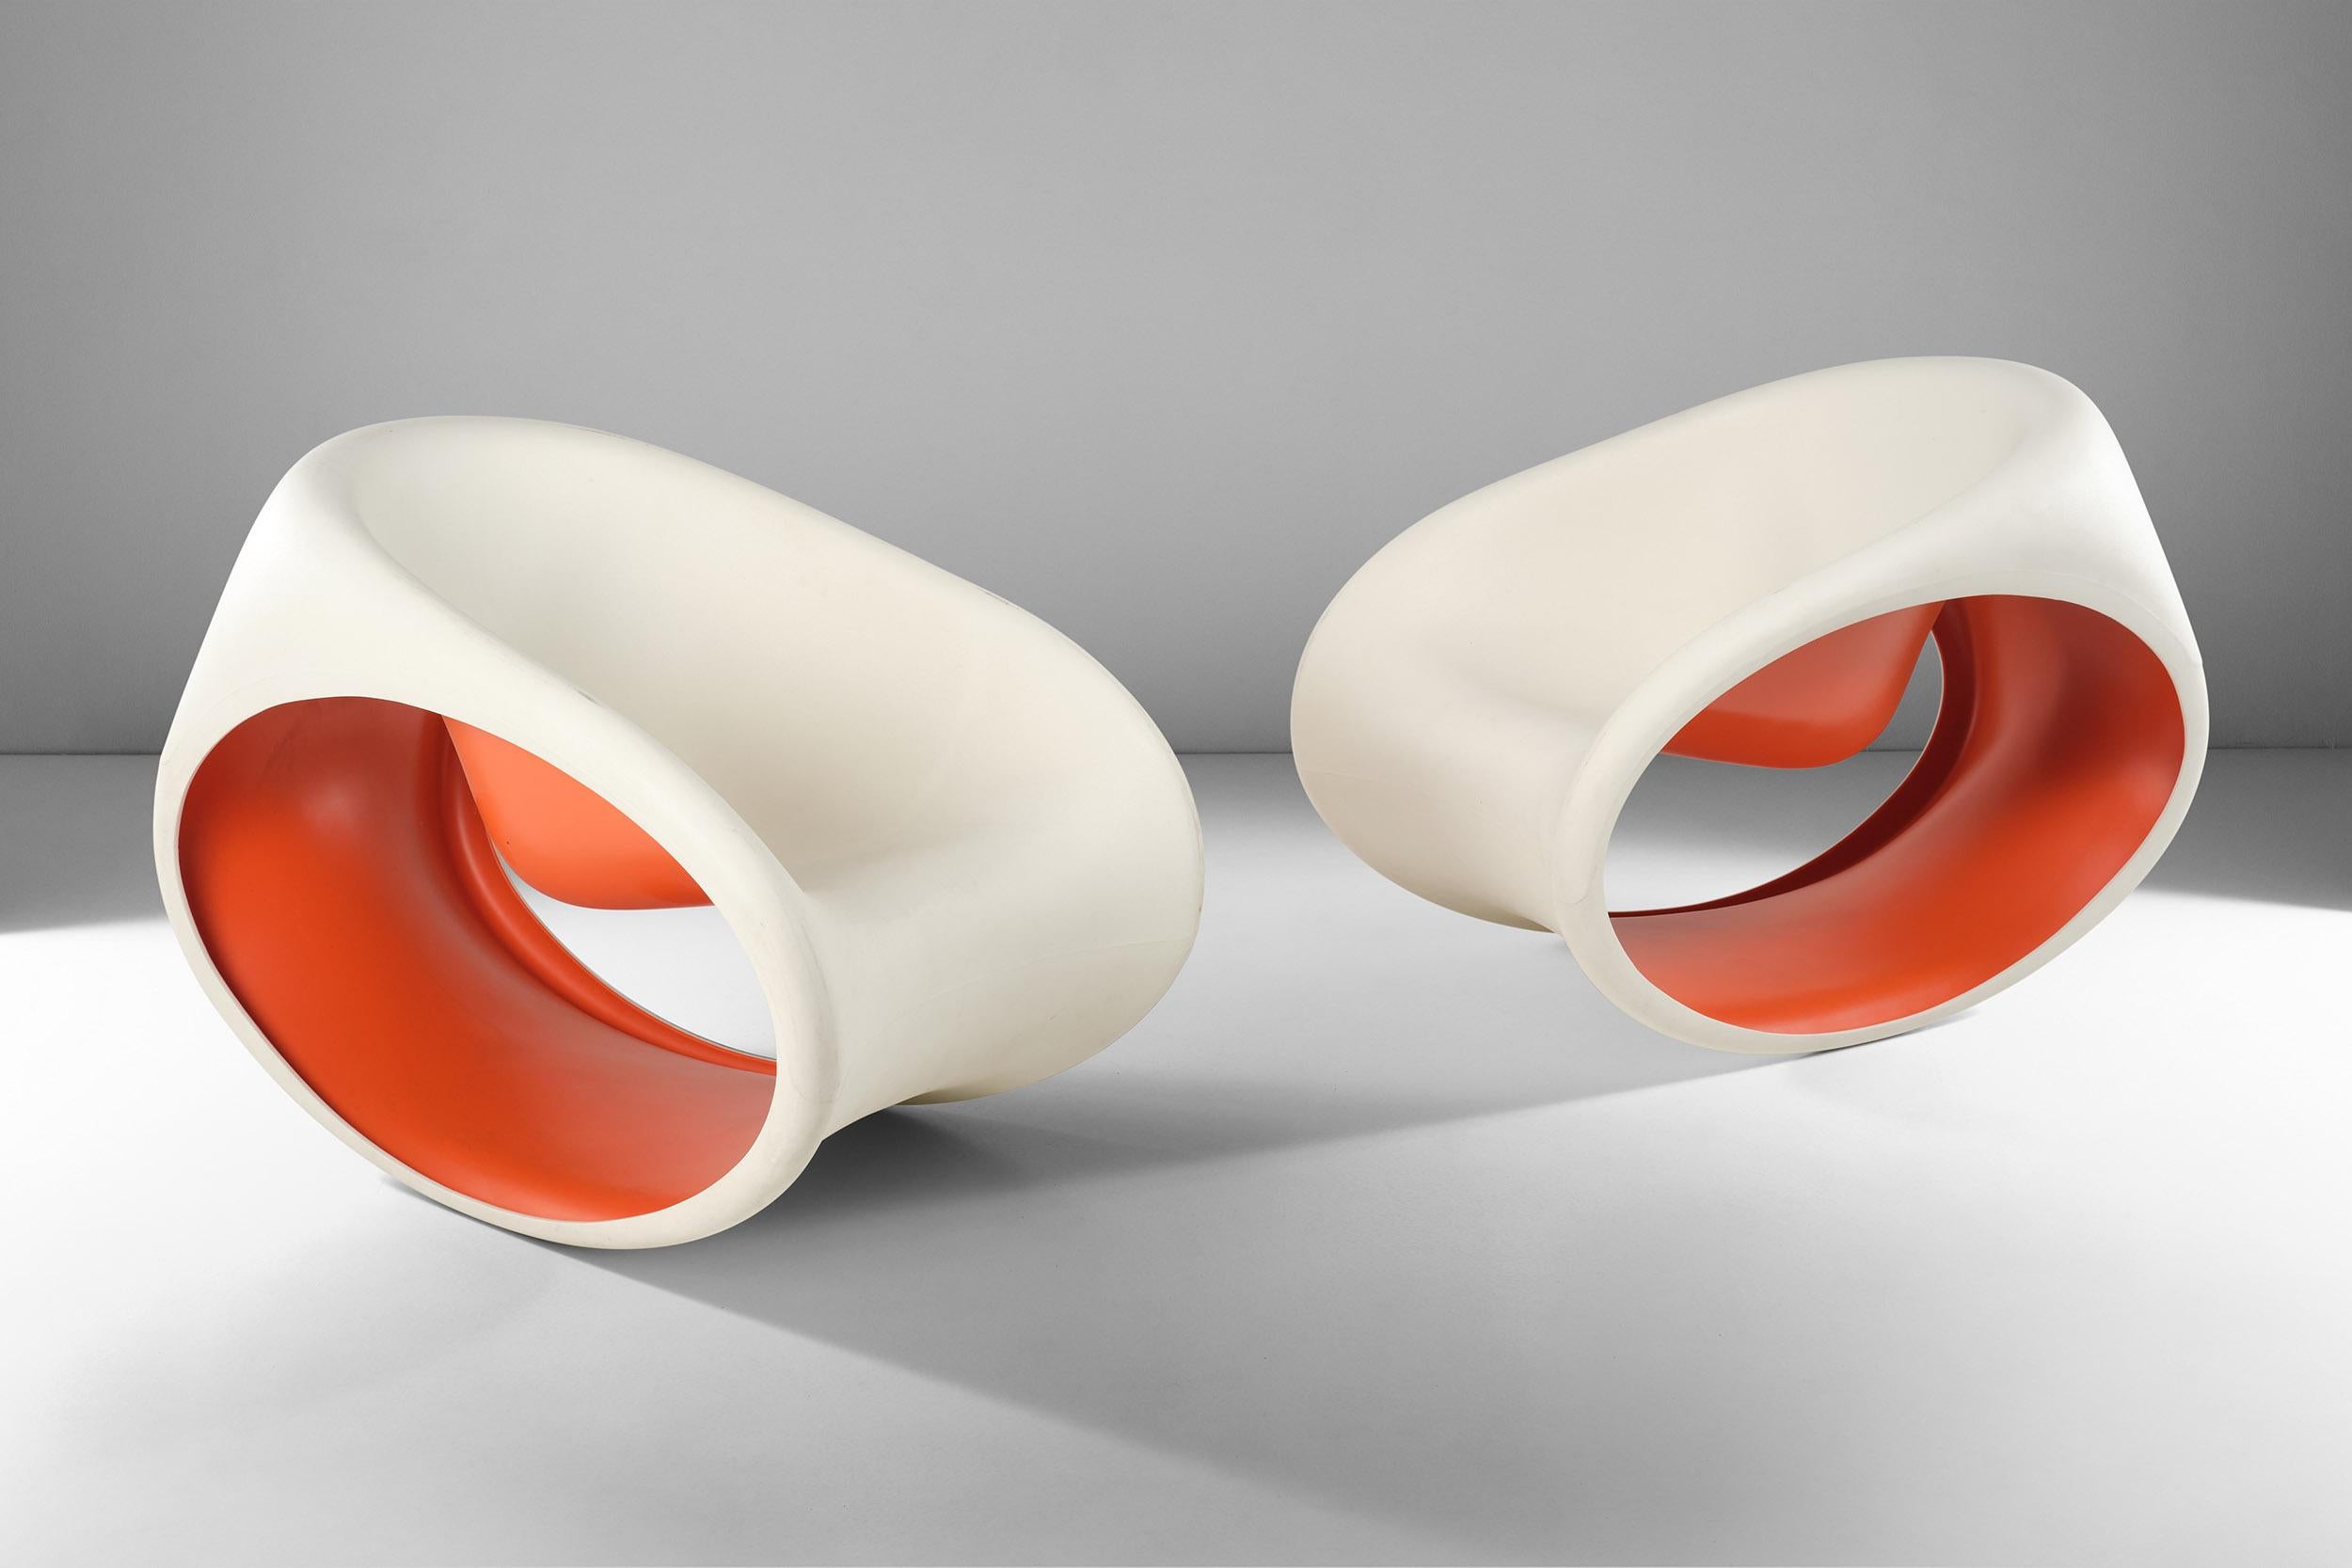 Diese MT3-Schaukelstühle wurden von Ron Arad für Driade entworfen und aus einem Monoblock-Rotationsguss-Polyethylen in sandweißer Außenfarbe und roter Innenfarbe hergestellt. 
Der Stuhl zeichnet sich durch seine weiche Form und sein schlankes